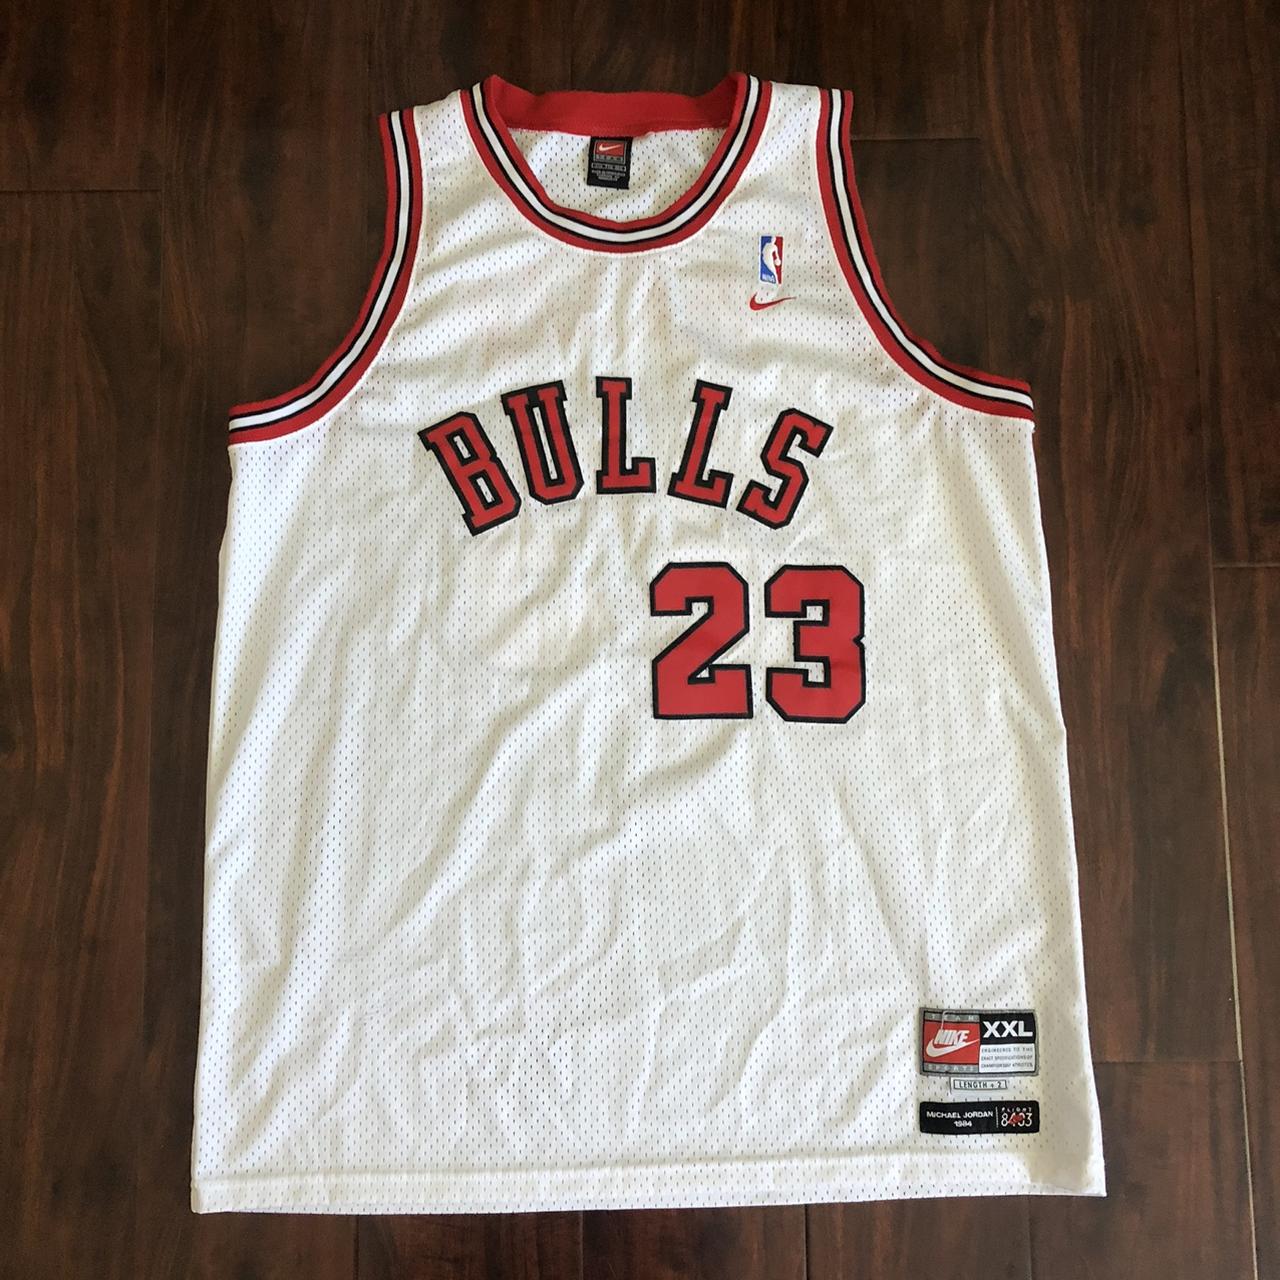 Men's Nike Chicago Bulls Sleeveless T-Shirt